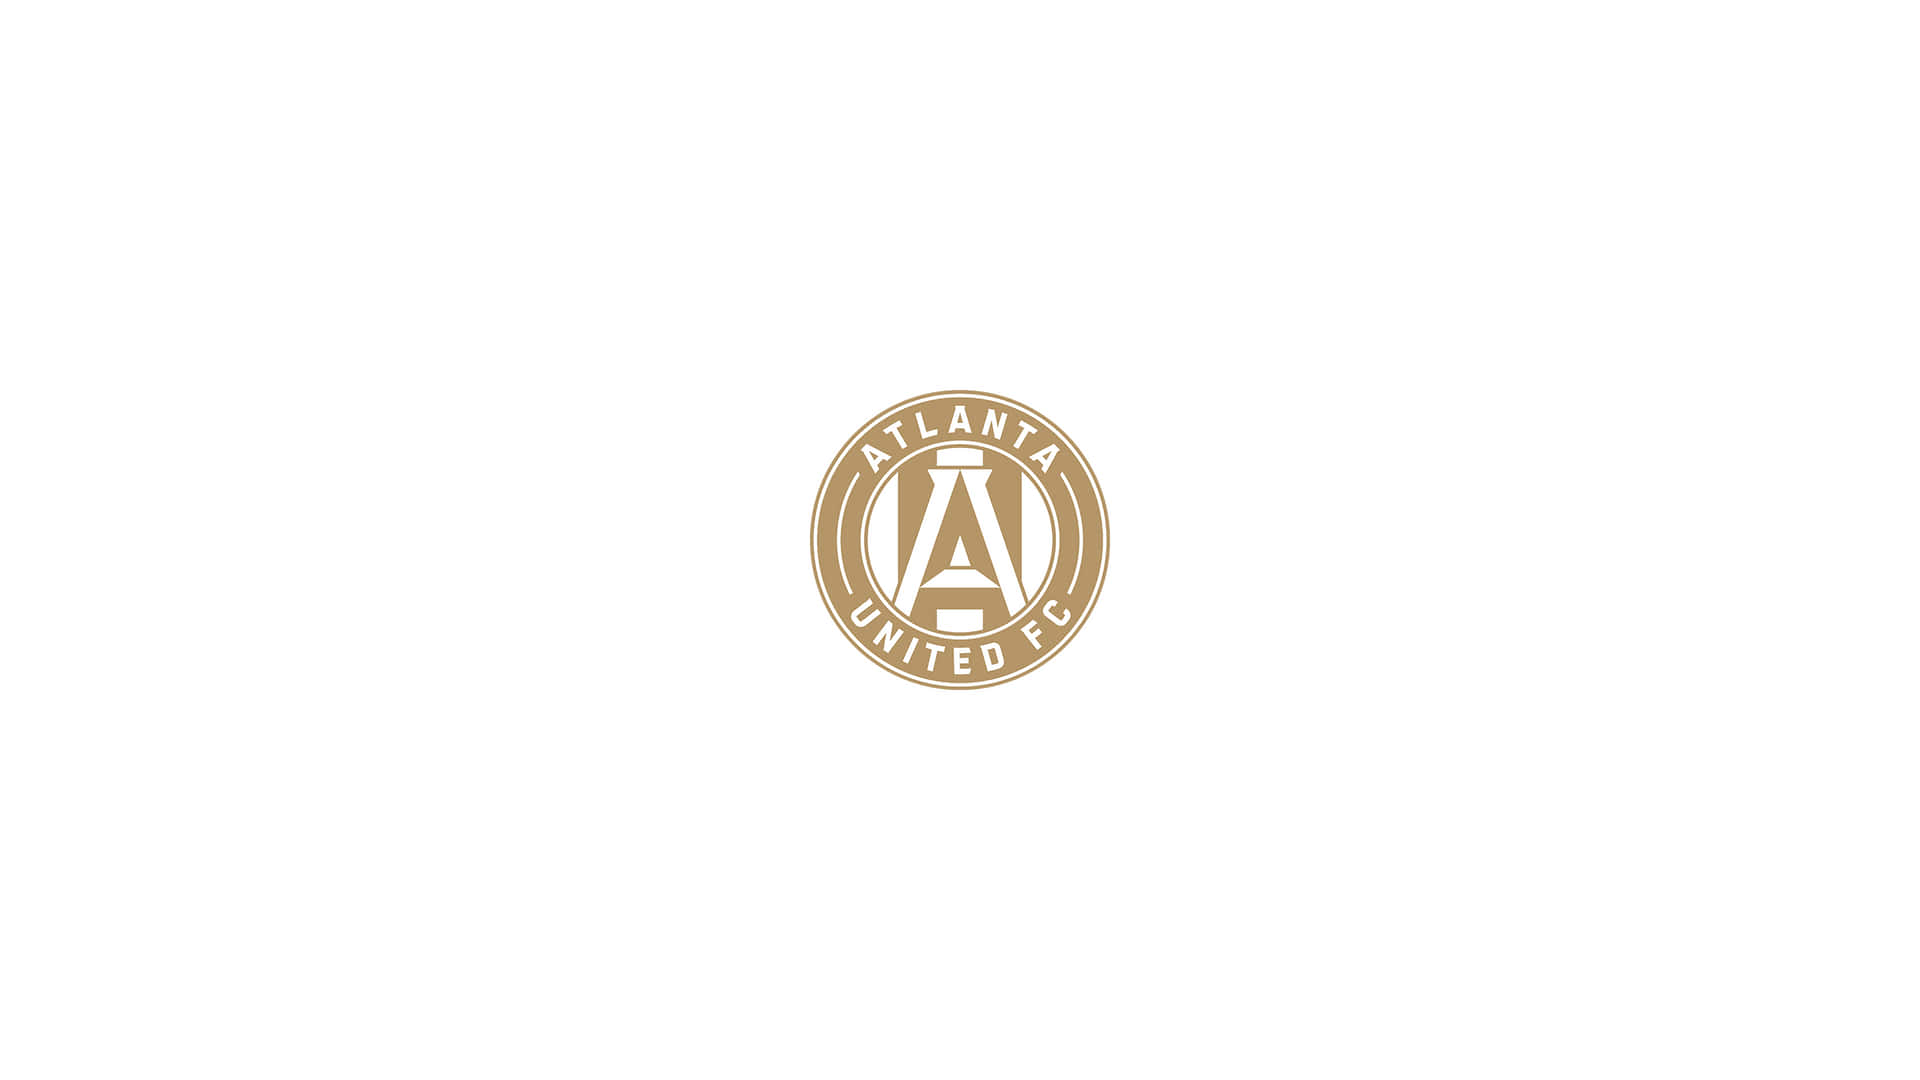 Logotipominimalista Do Atlanta United Fc. Papel de Parede